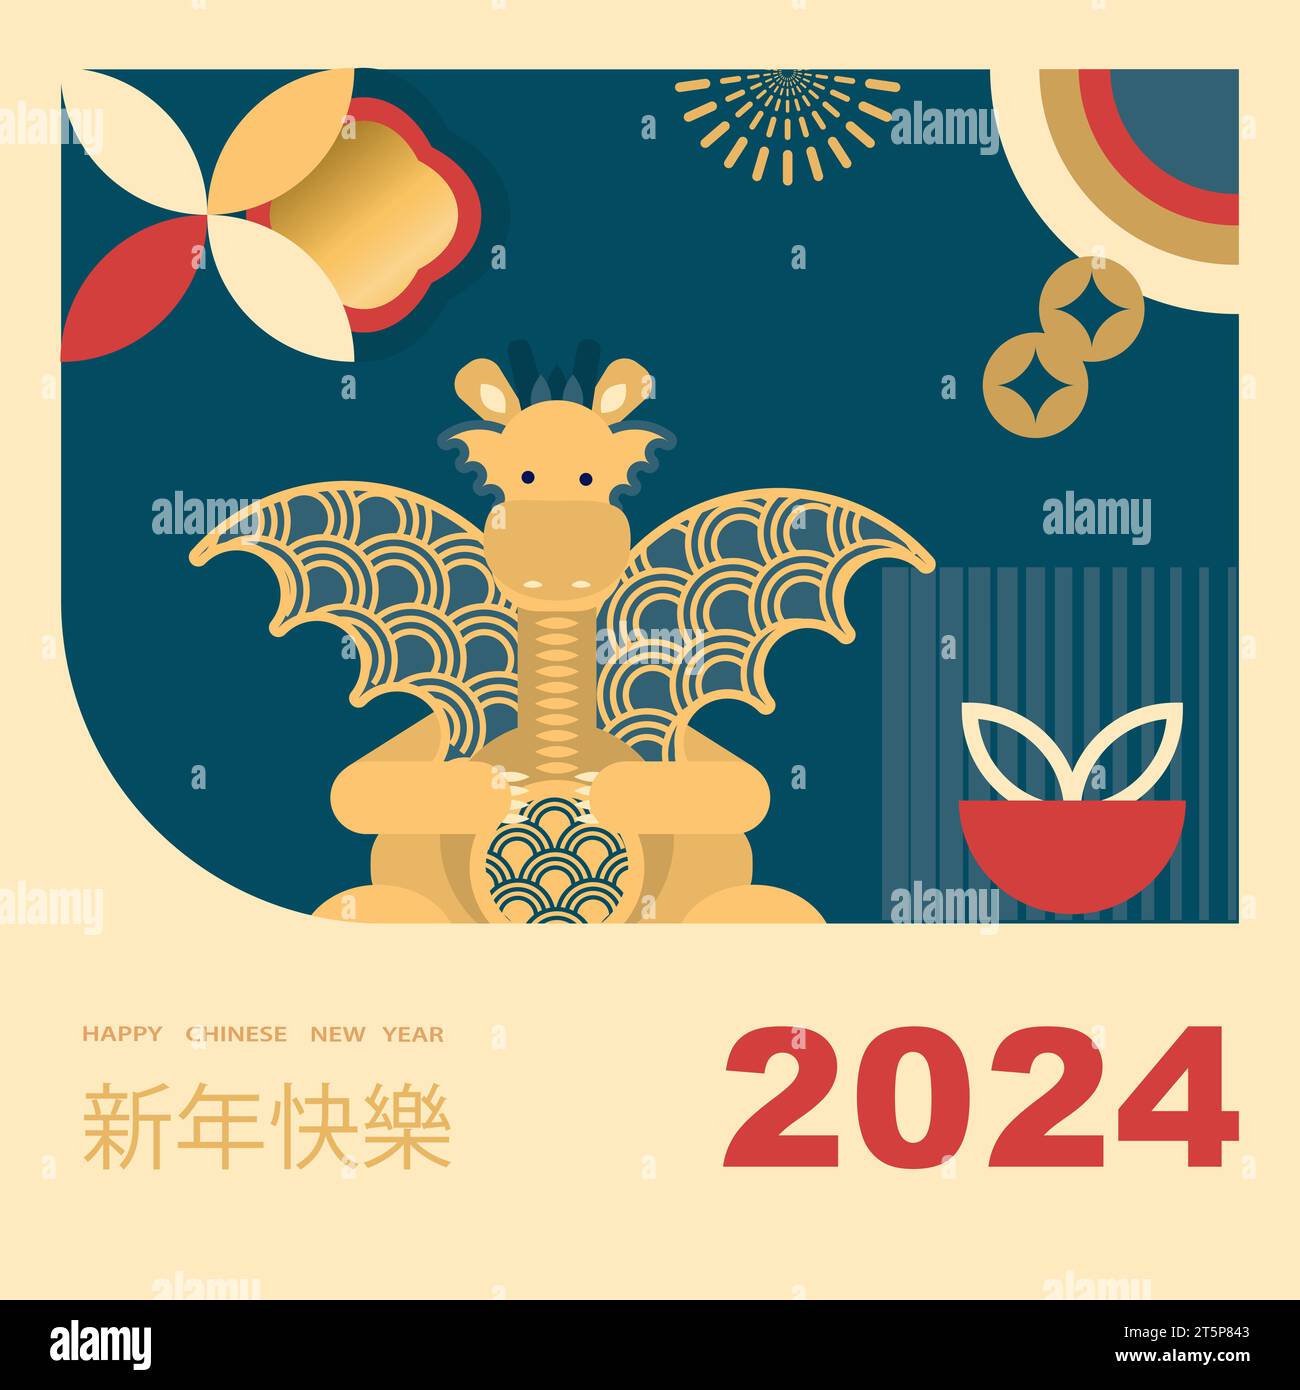 Chinesisches Neujahr 2024, Jahr des Drachen. Chinesisches Neujahrsbanner mit Drachen im geometrischen Stil. Übersetzung aus dem Chinesischen - Happy New Year Stock Vektor